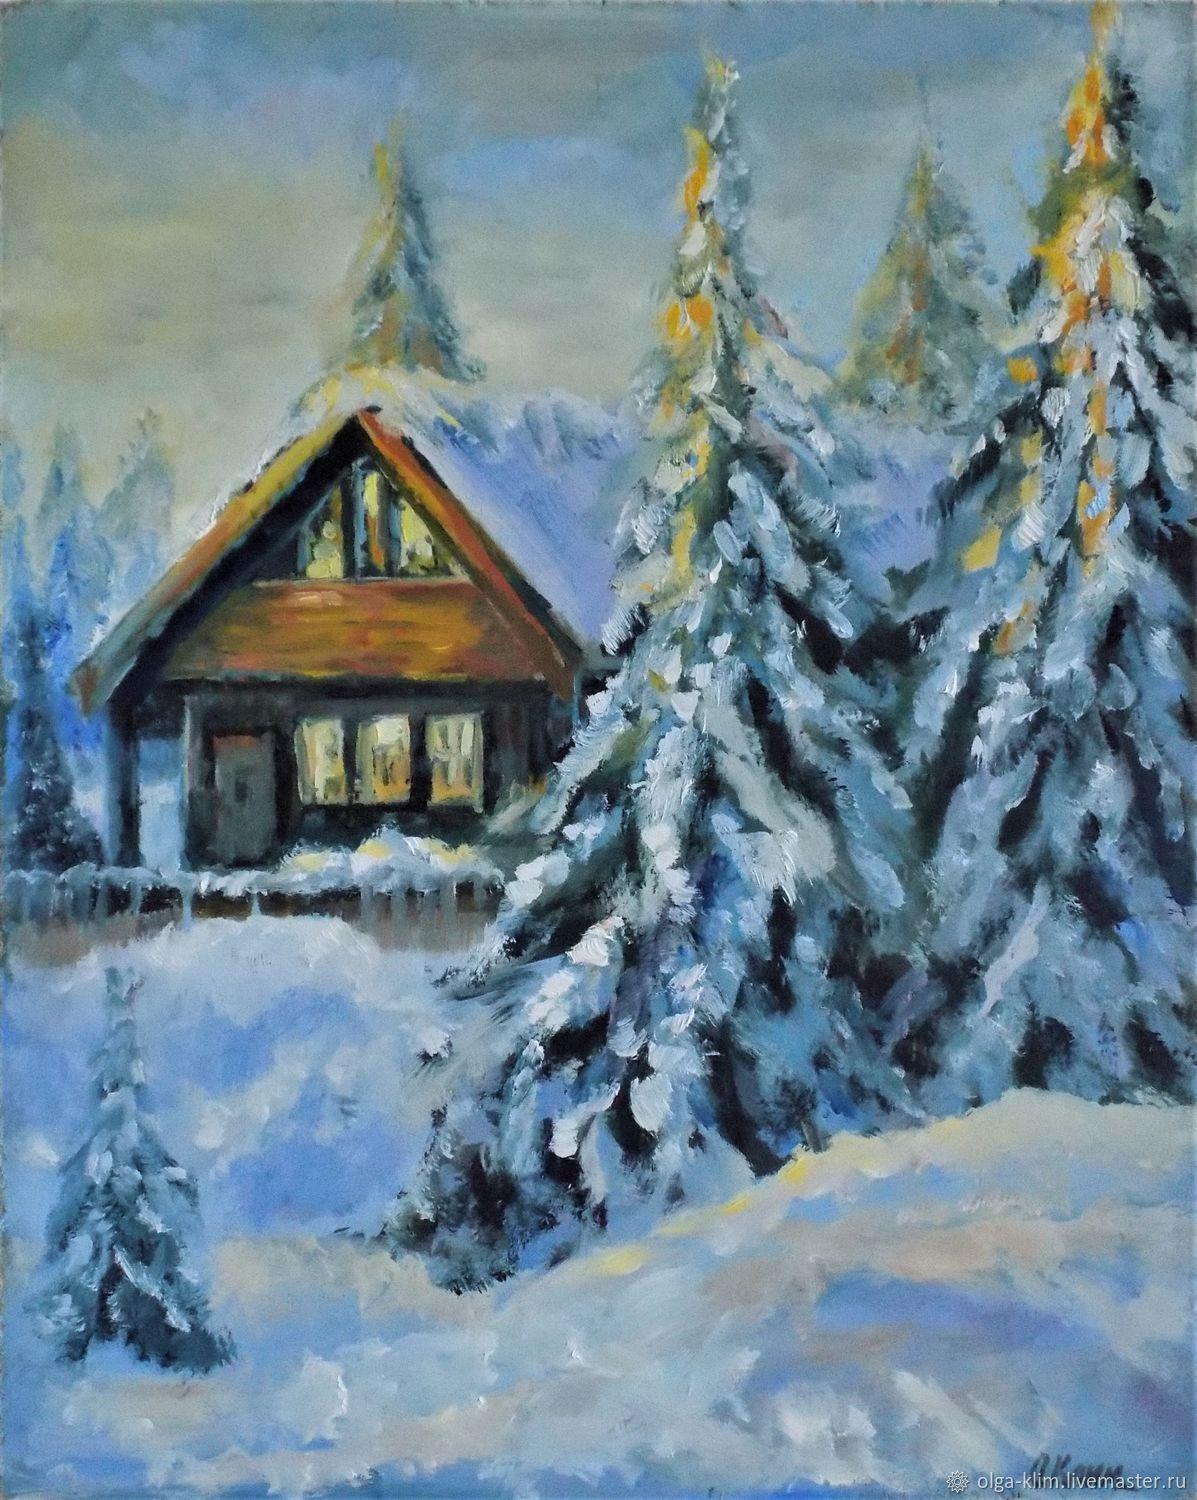 Деревенский домик зимой - 68 фото